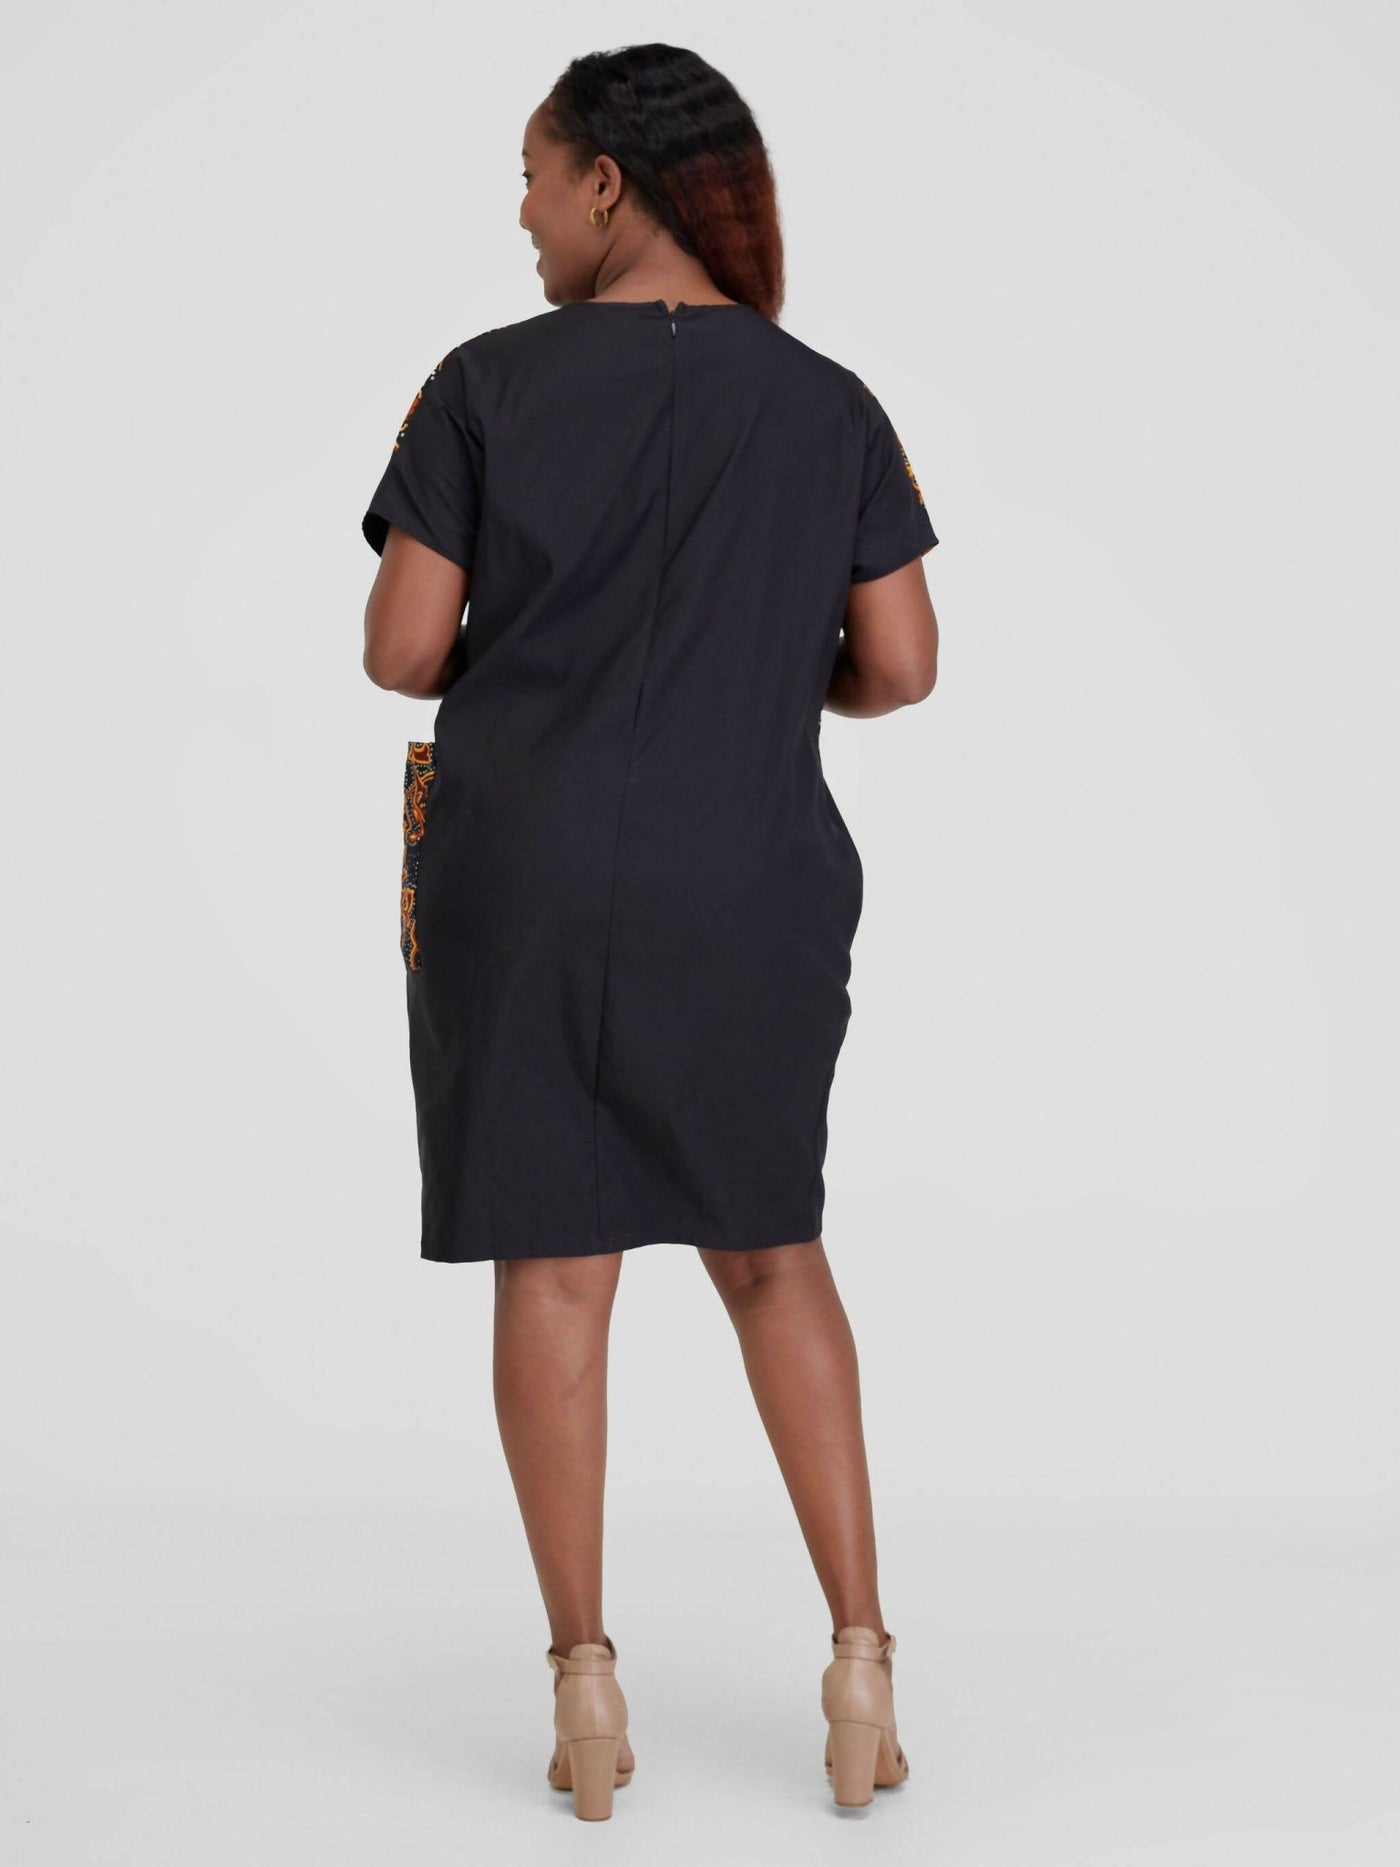 Beqss Zula Dolman Asymmetrical Shift Dress - Black - Shopzetu